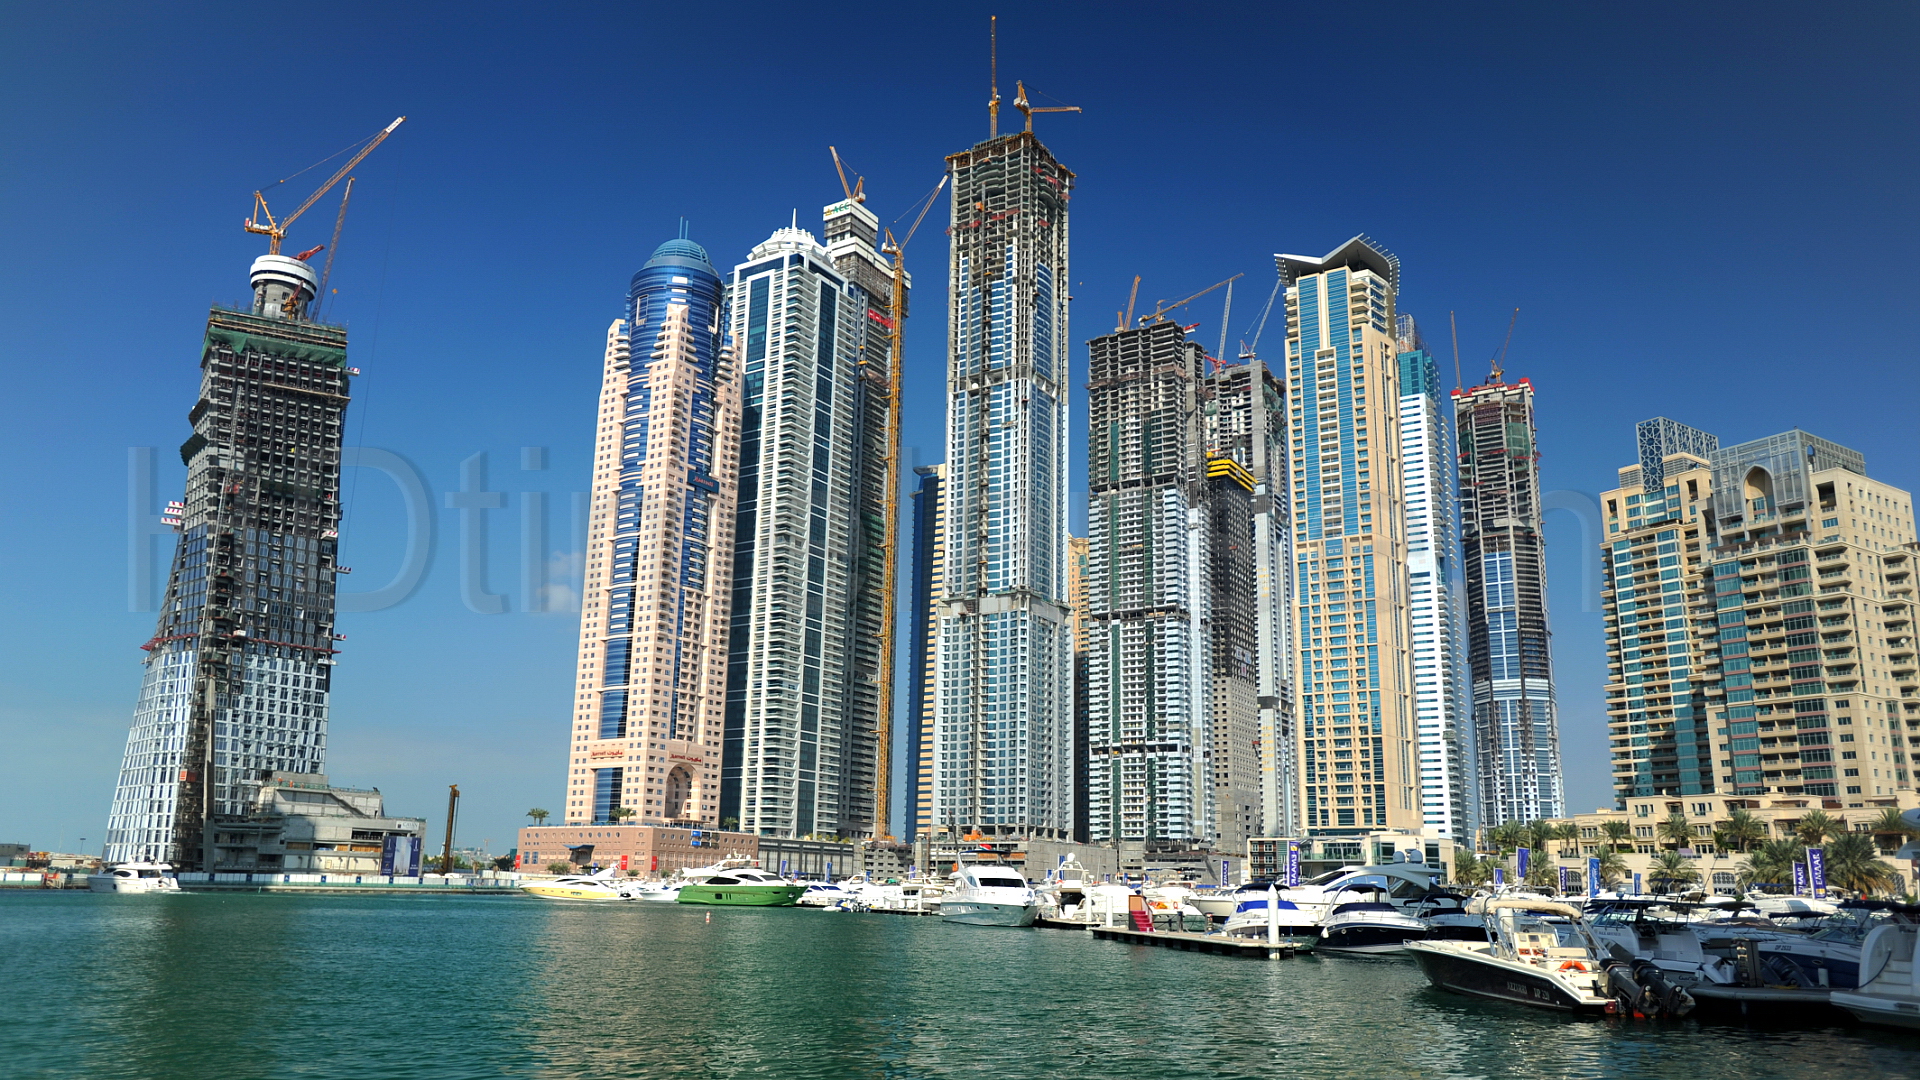 
Общая стоимость строительных проектов в ОАЭ составляет $212 млрд.